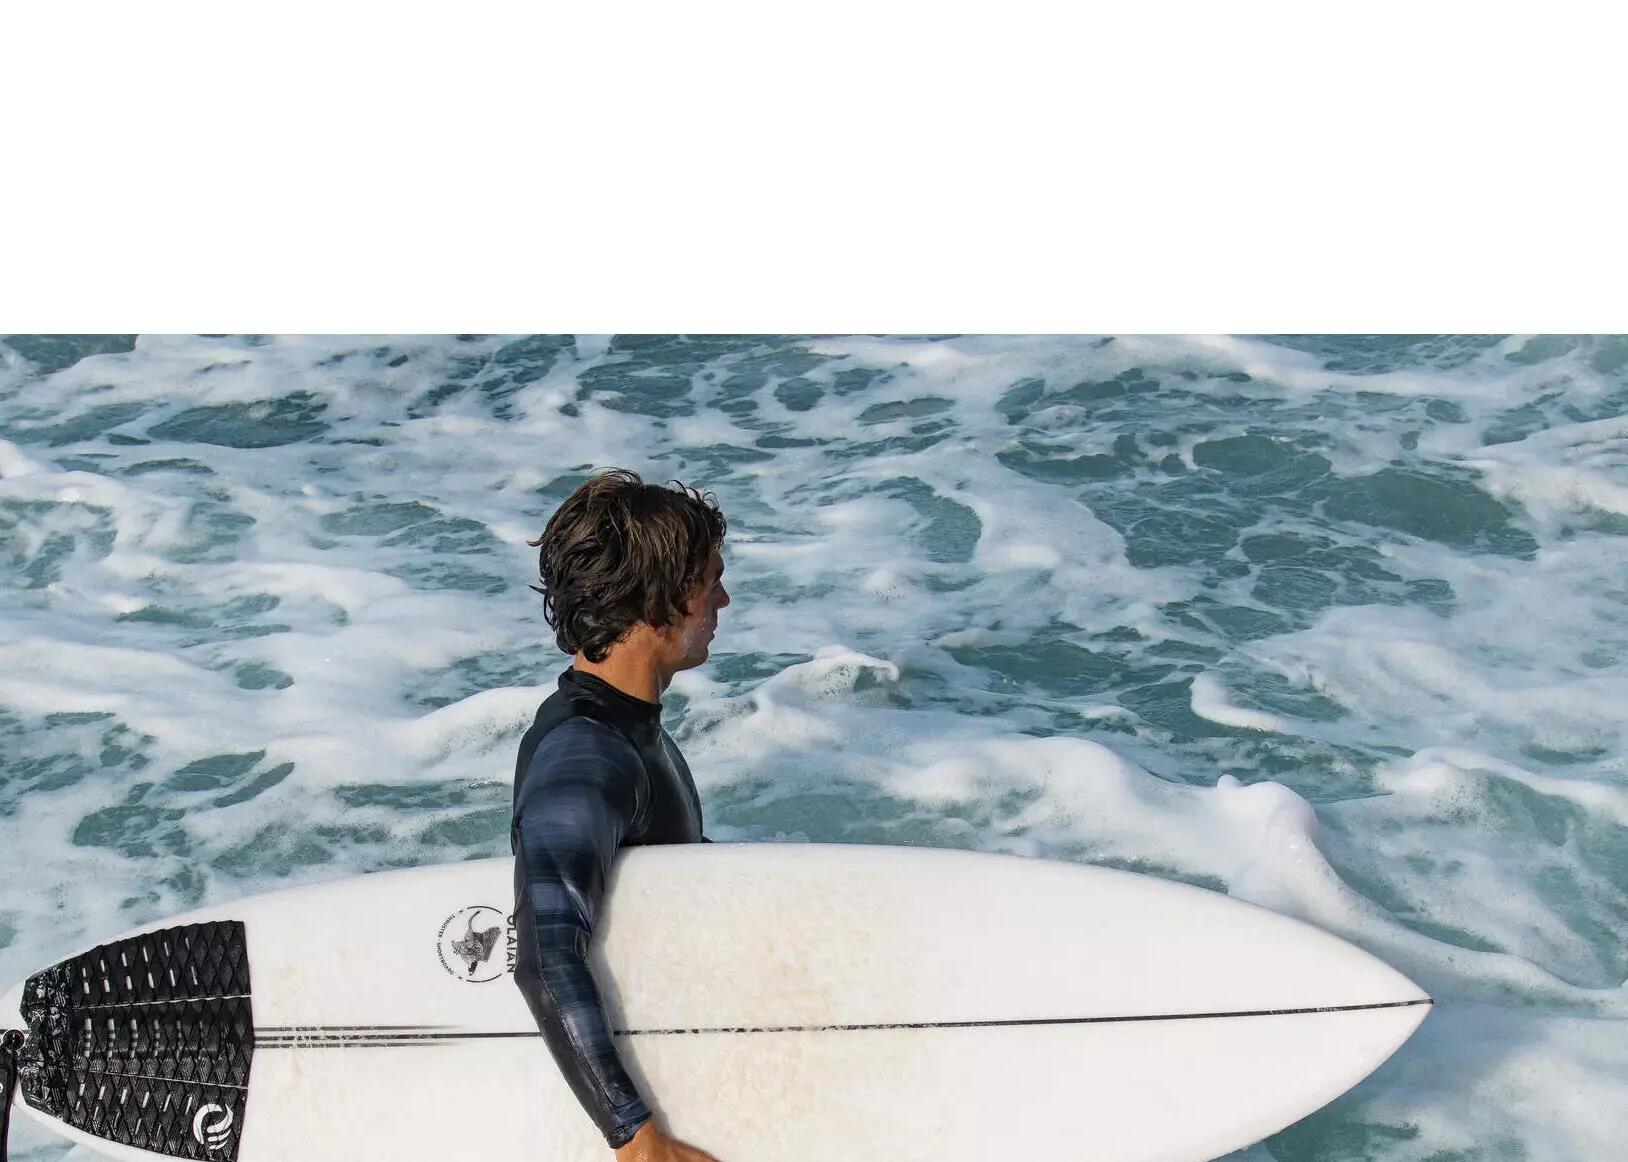 Kan je beginnen surfen op een shortboard?